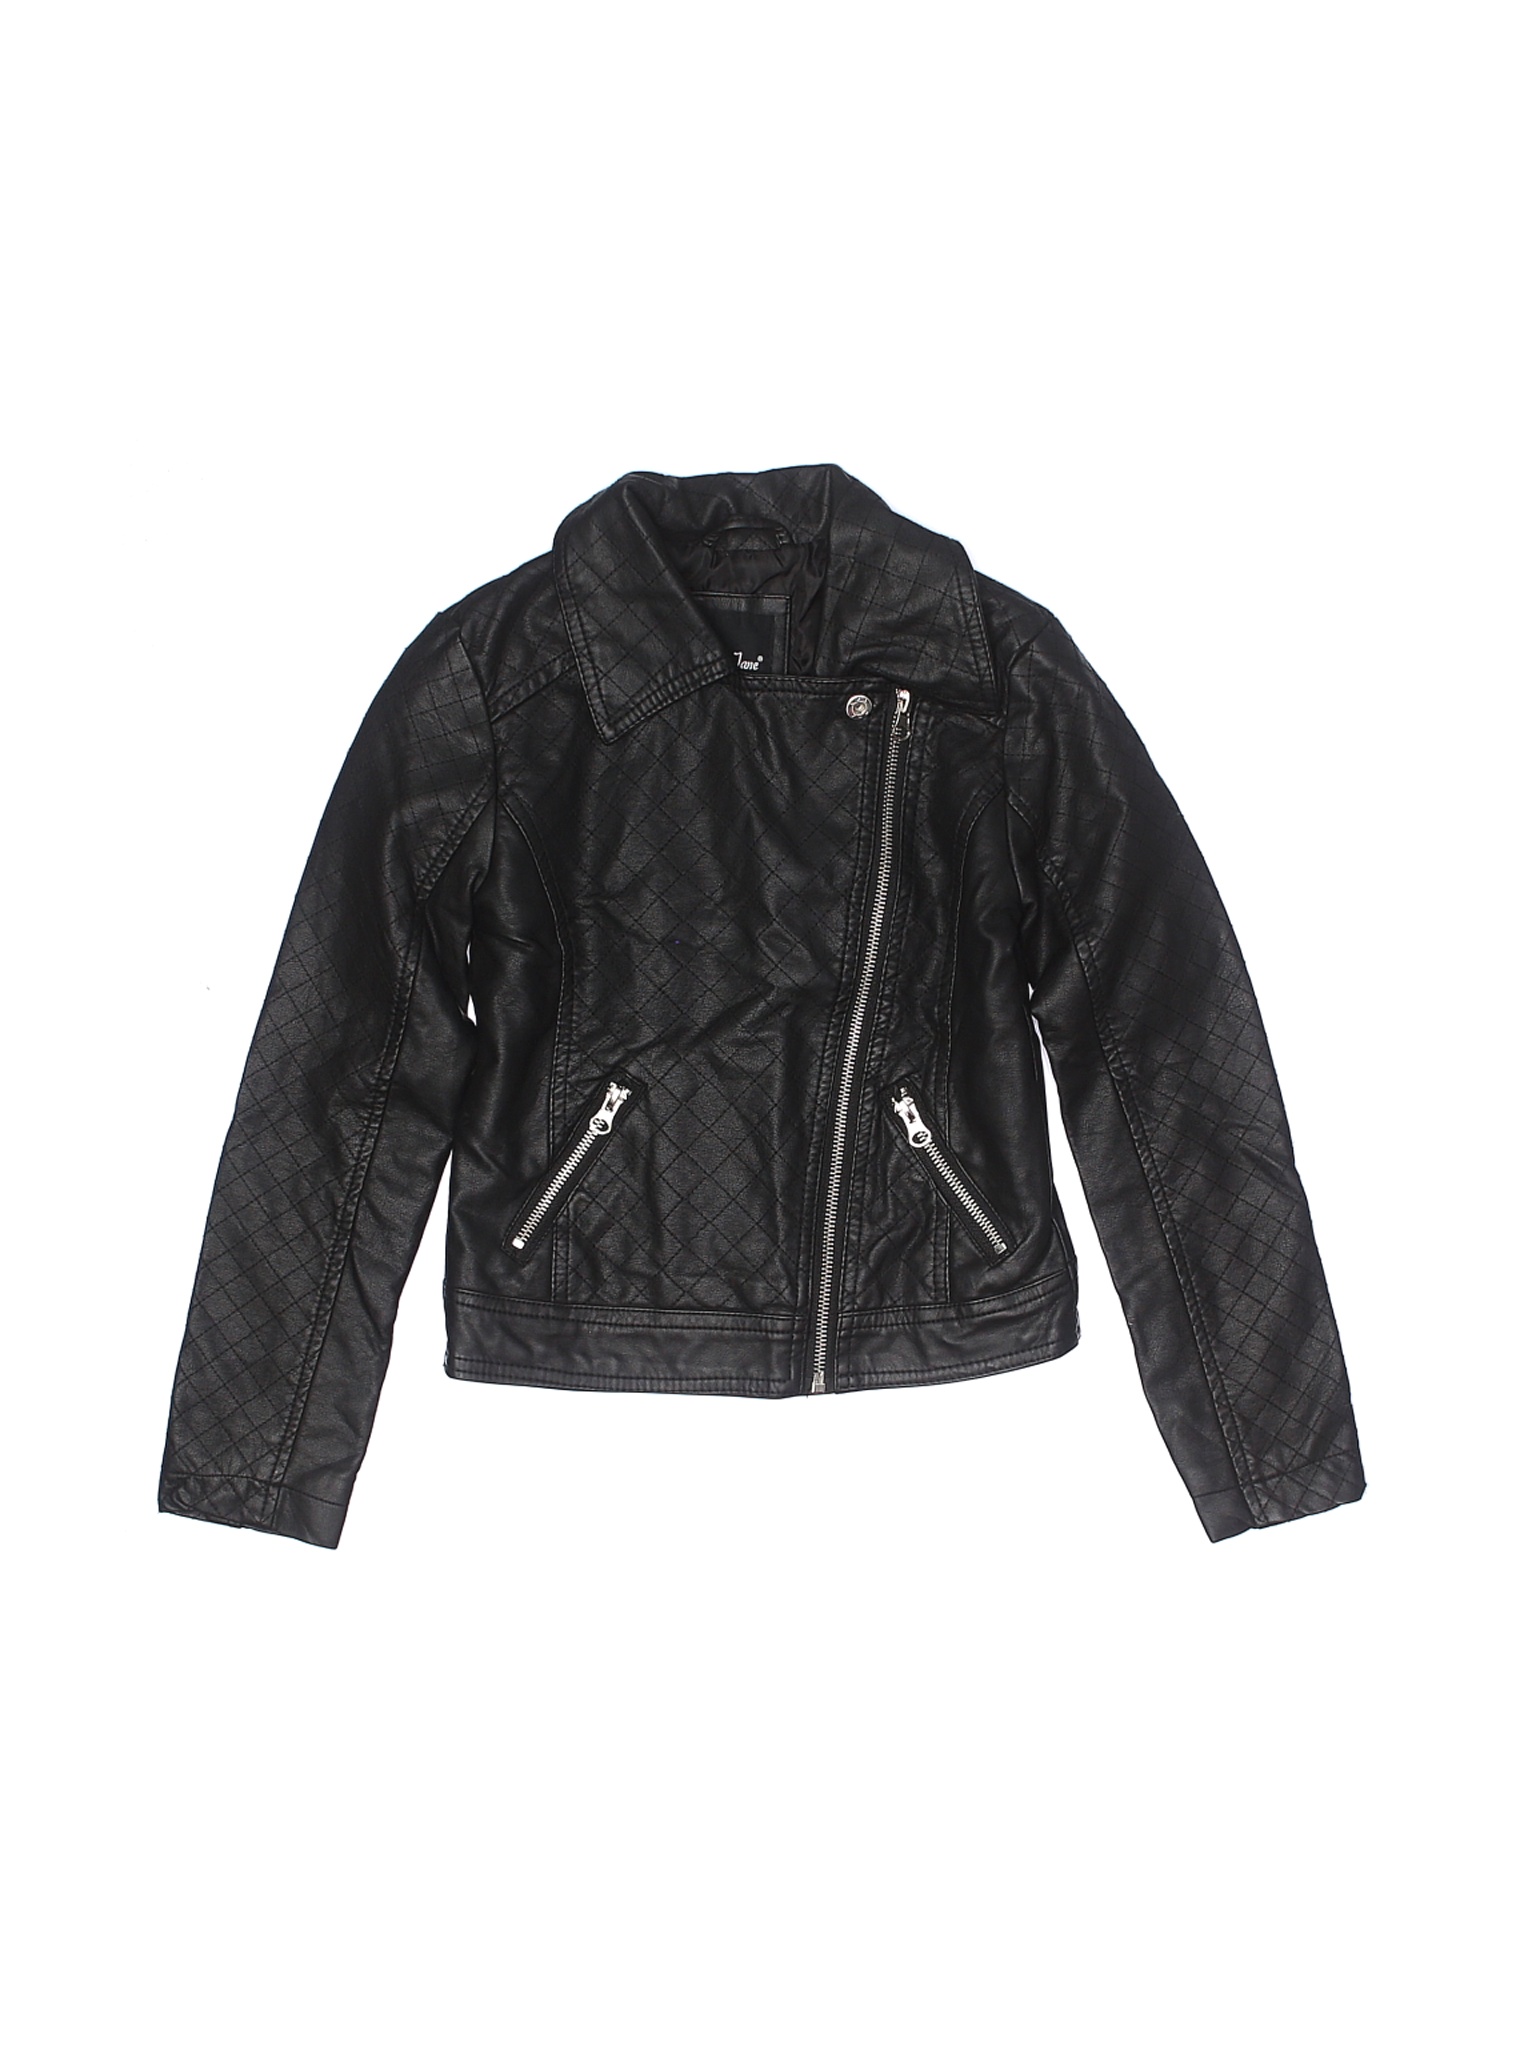 Me Jane Girls Black Faux Leather Jacket 7 | eBay